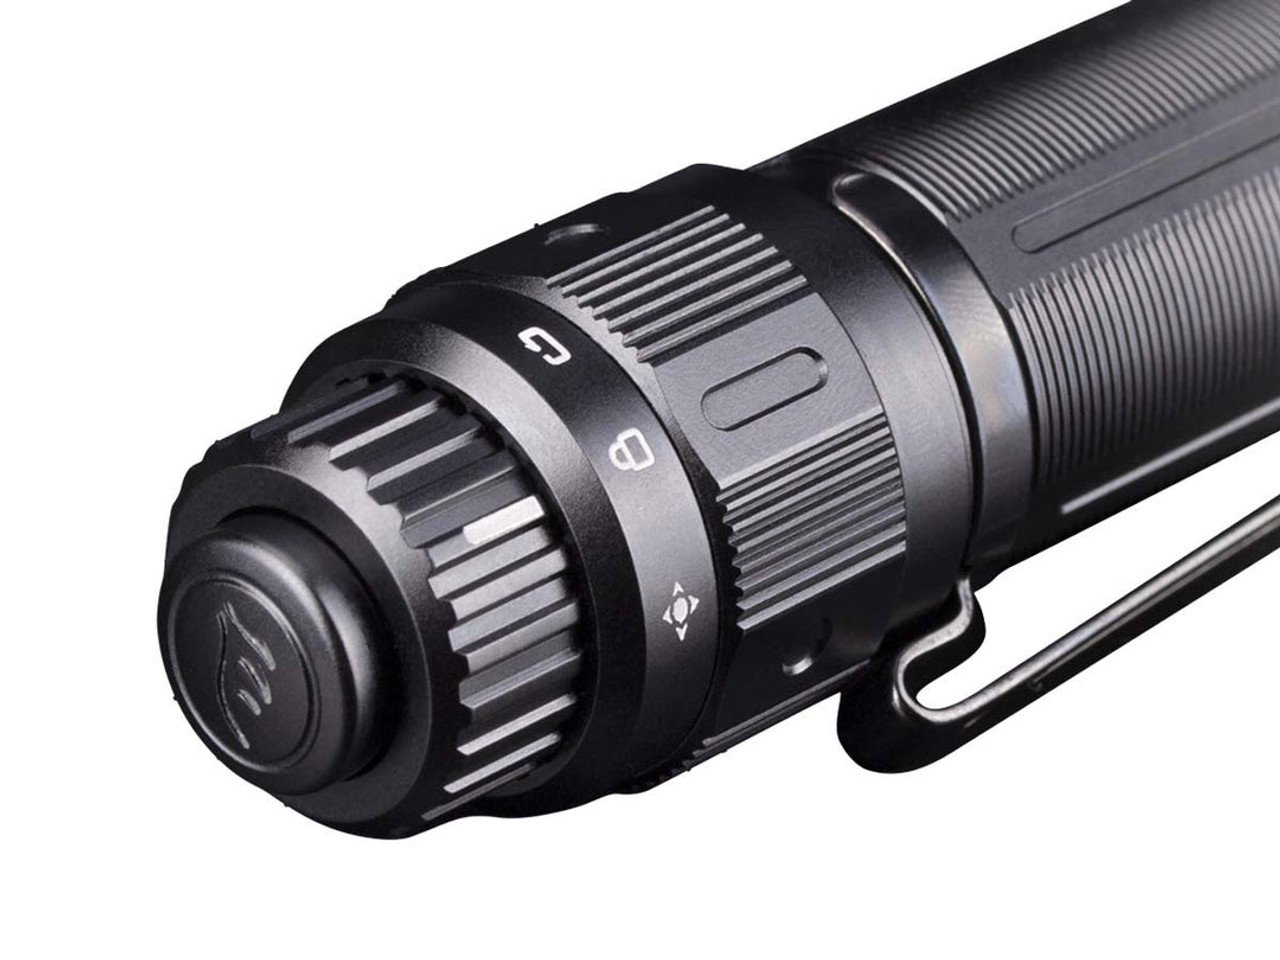 Fenix Tactical Flashlight (PD36TAC) Black Construction, 3000 Lumens Max